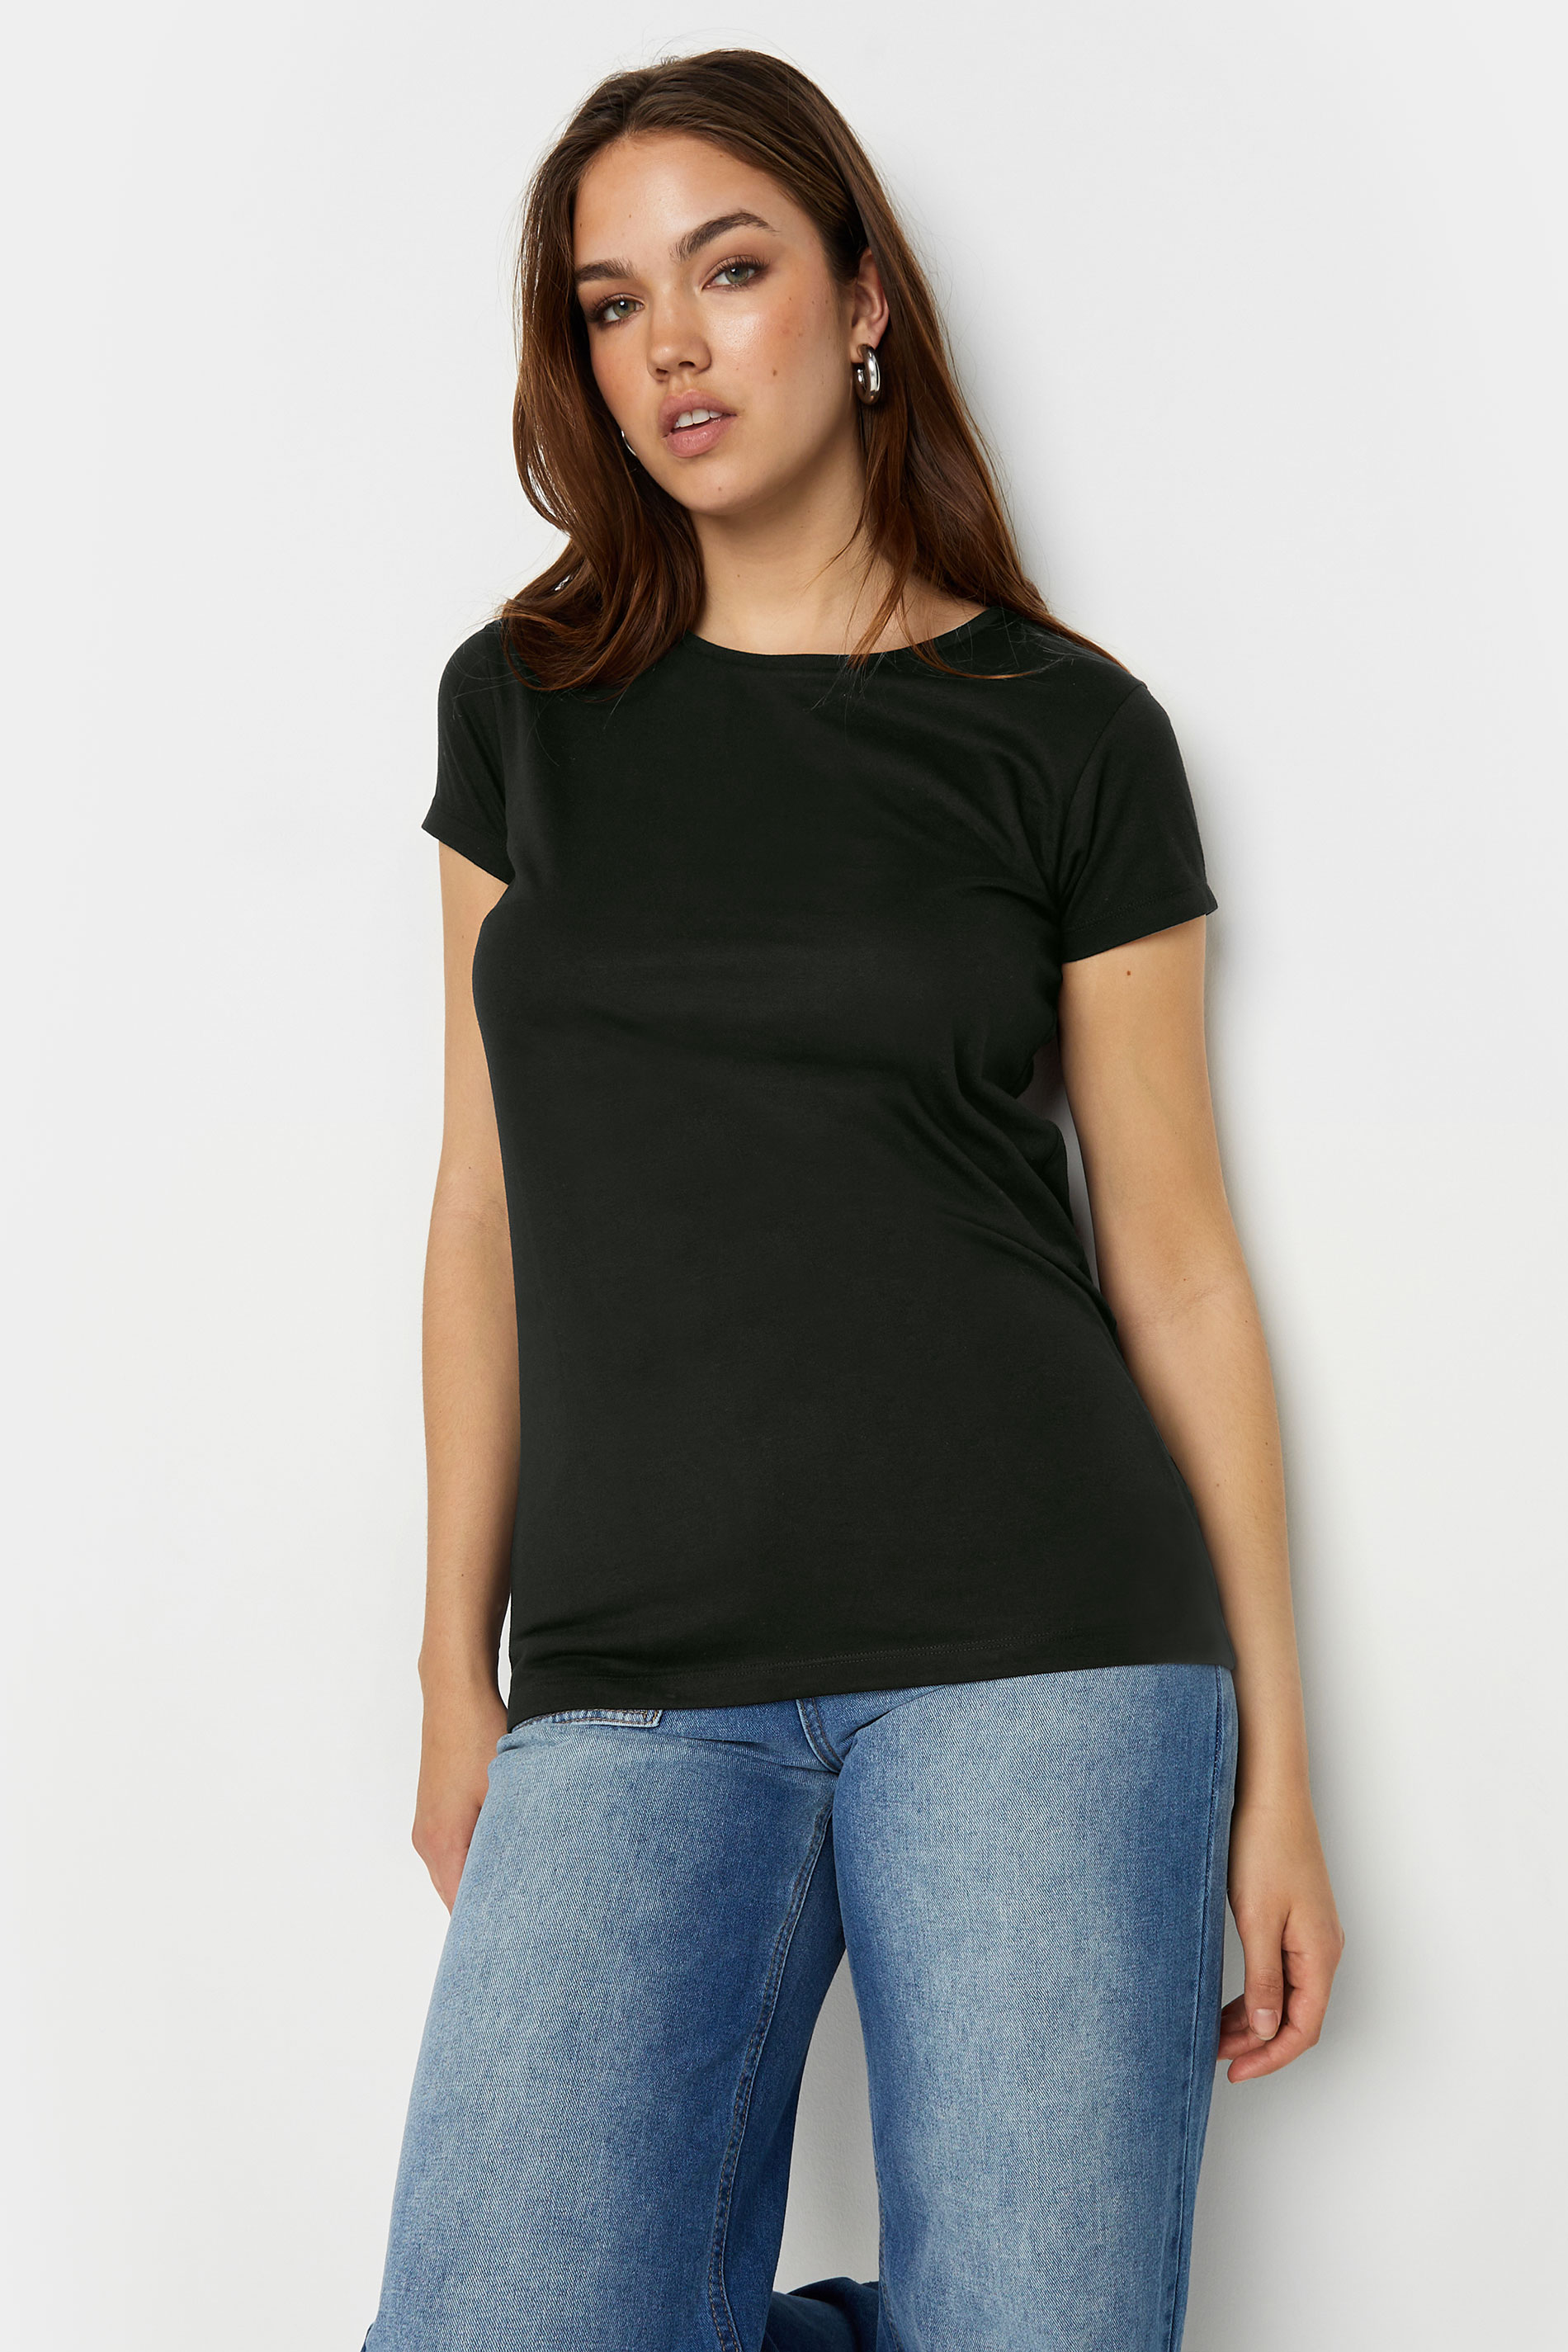 LTS 2 PACK Tall Women's Black & White T-Shirts | Long Tall Sally 2